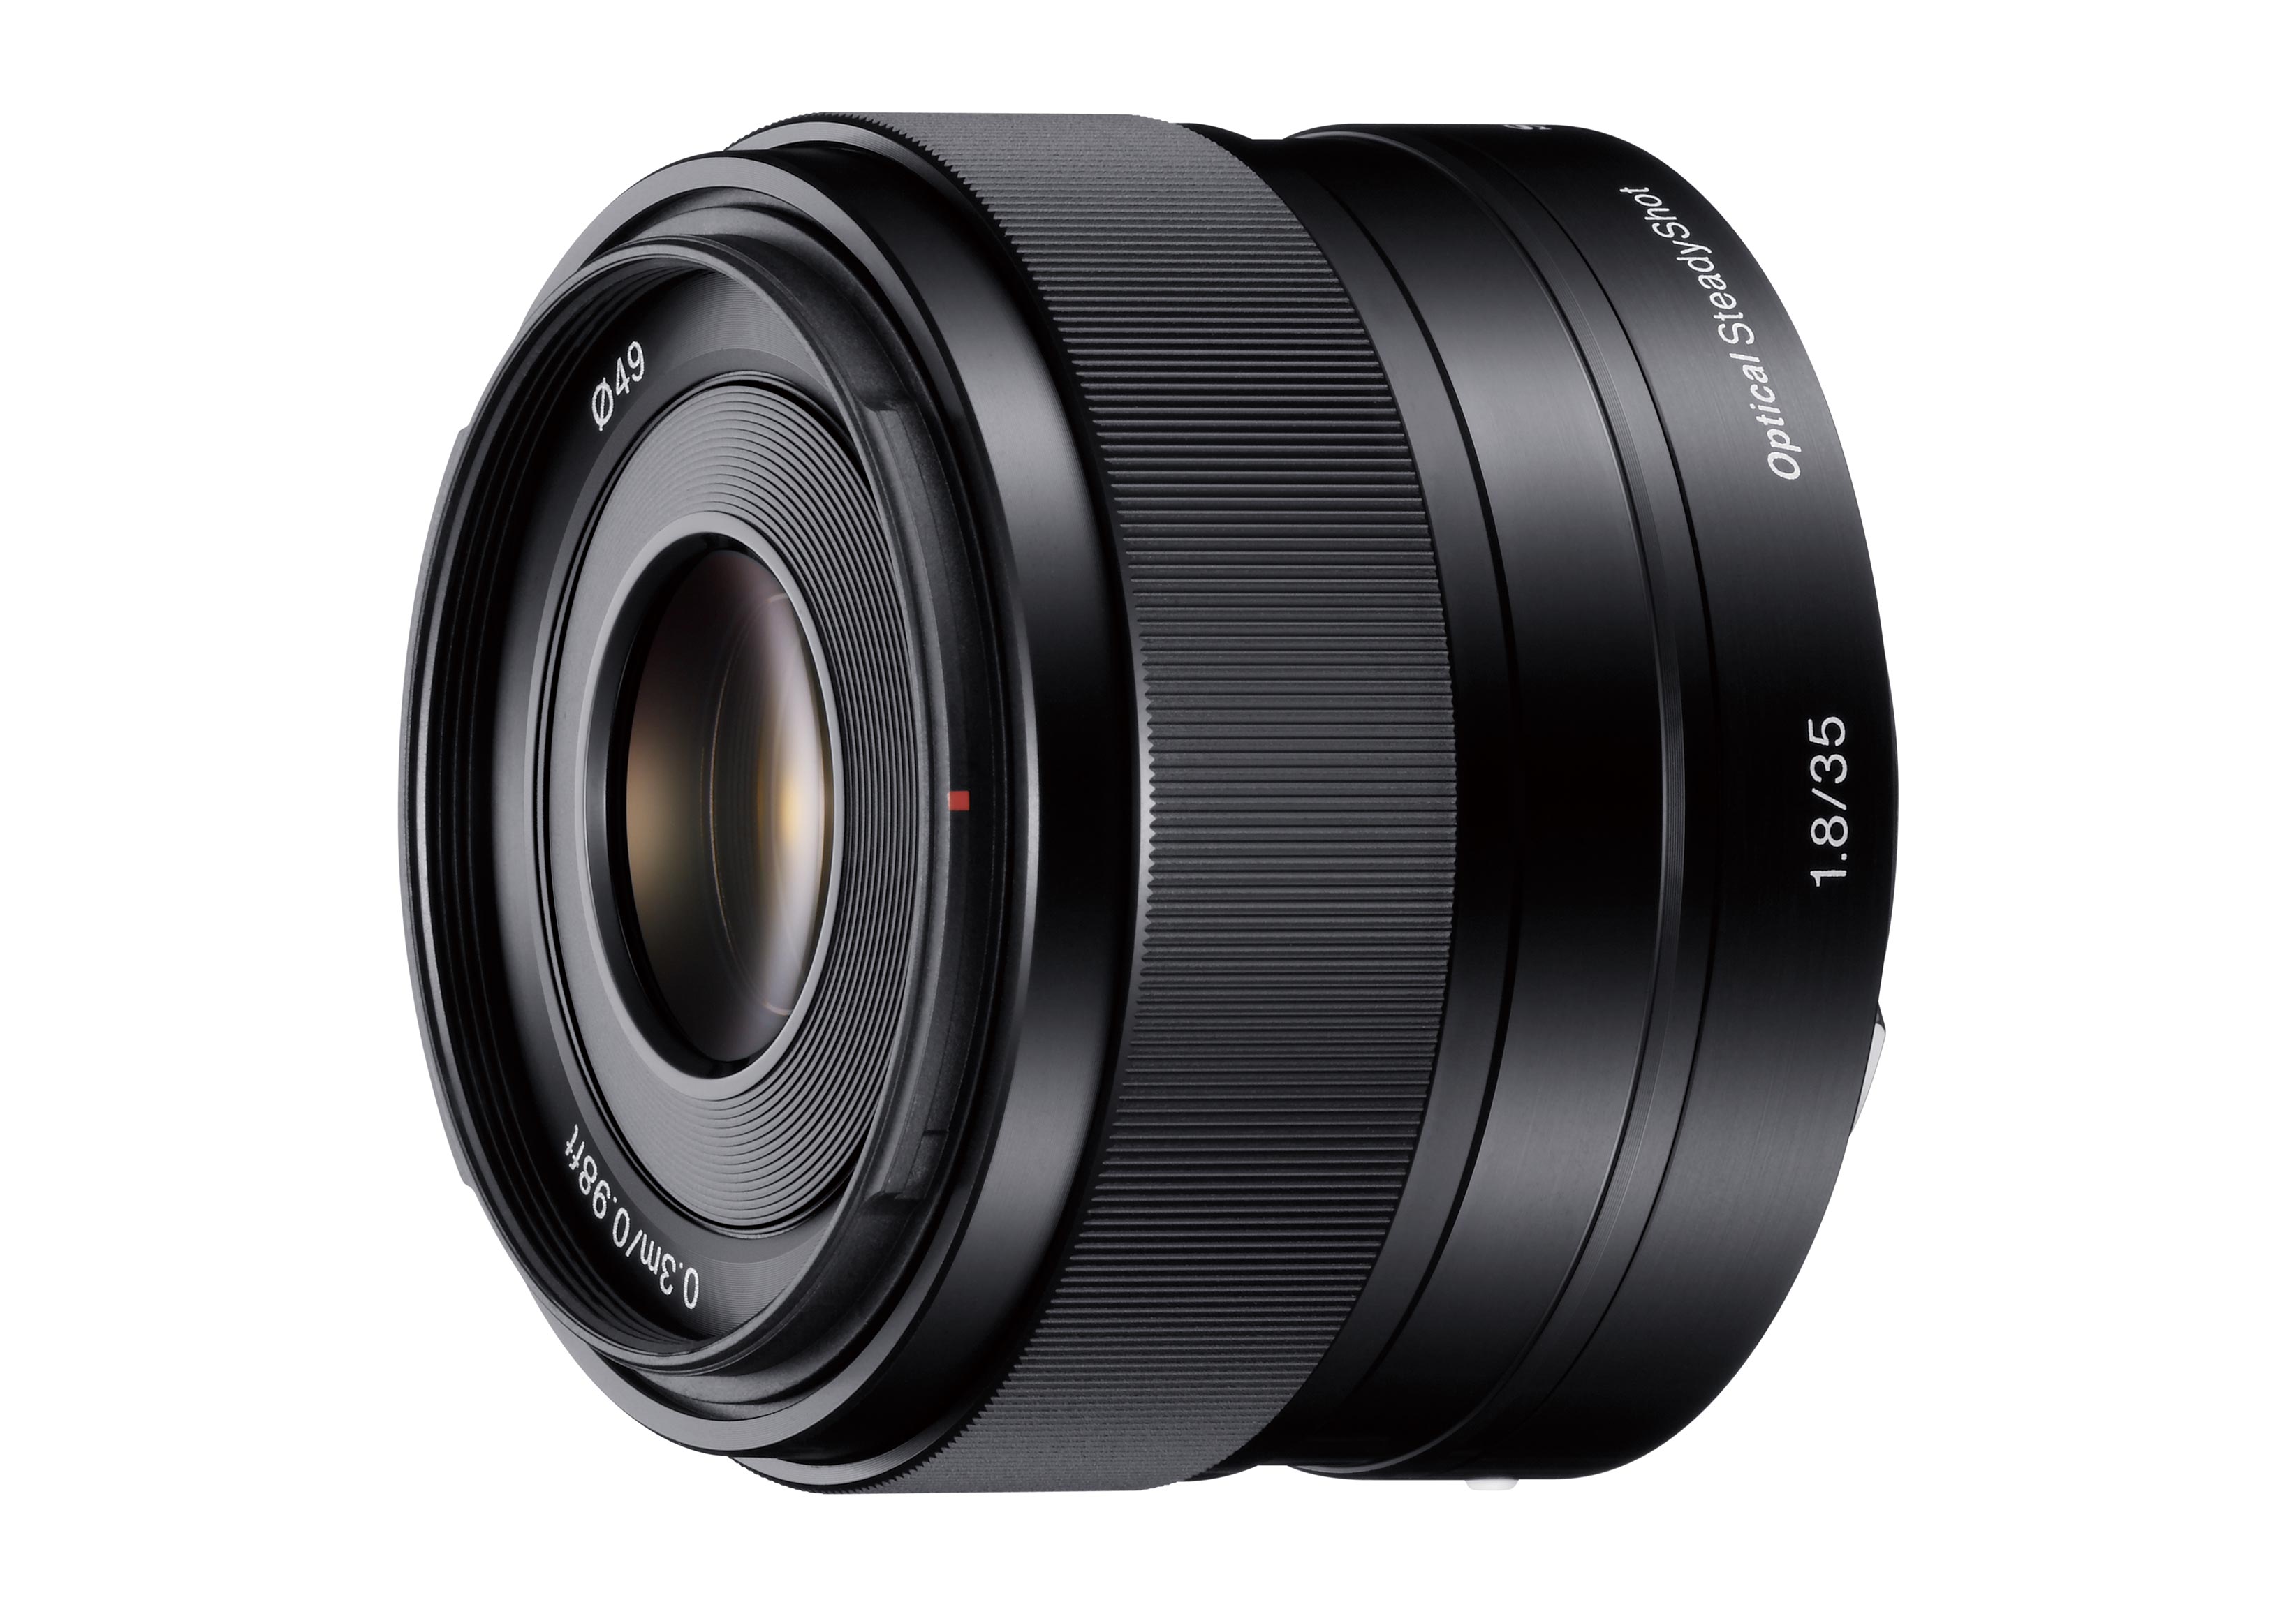 カメラ レンズ(単焦点) SEL35F18 - E 35mm F1.8 OSS (E 接環專屬鏡頭) - Sony 台灣官方購物 